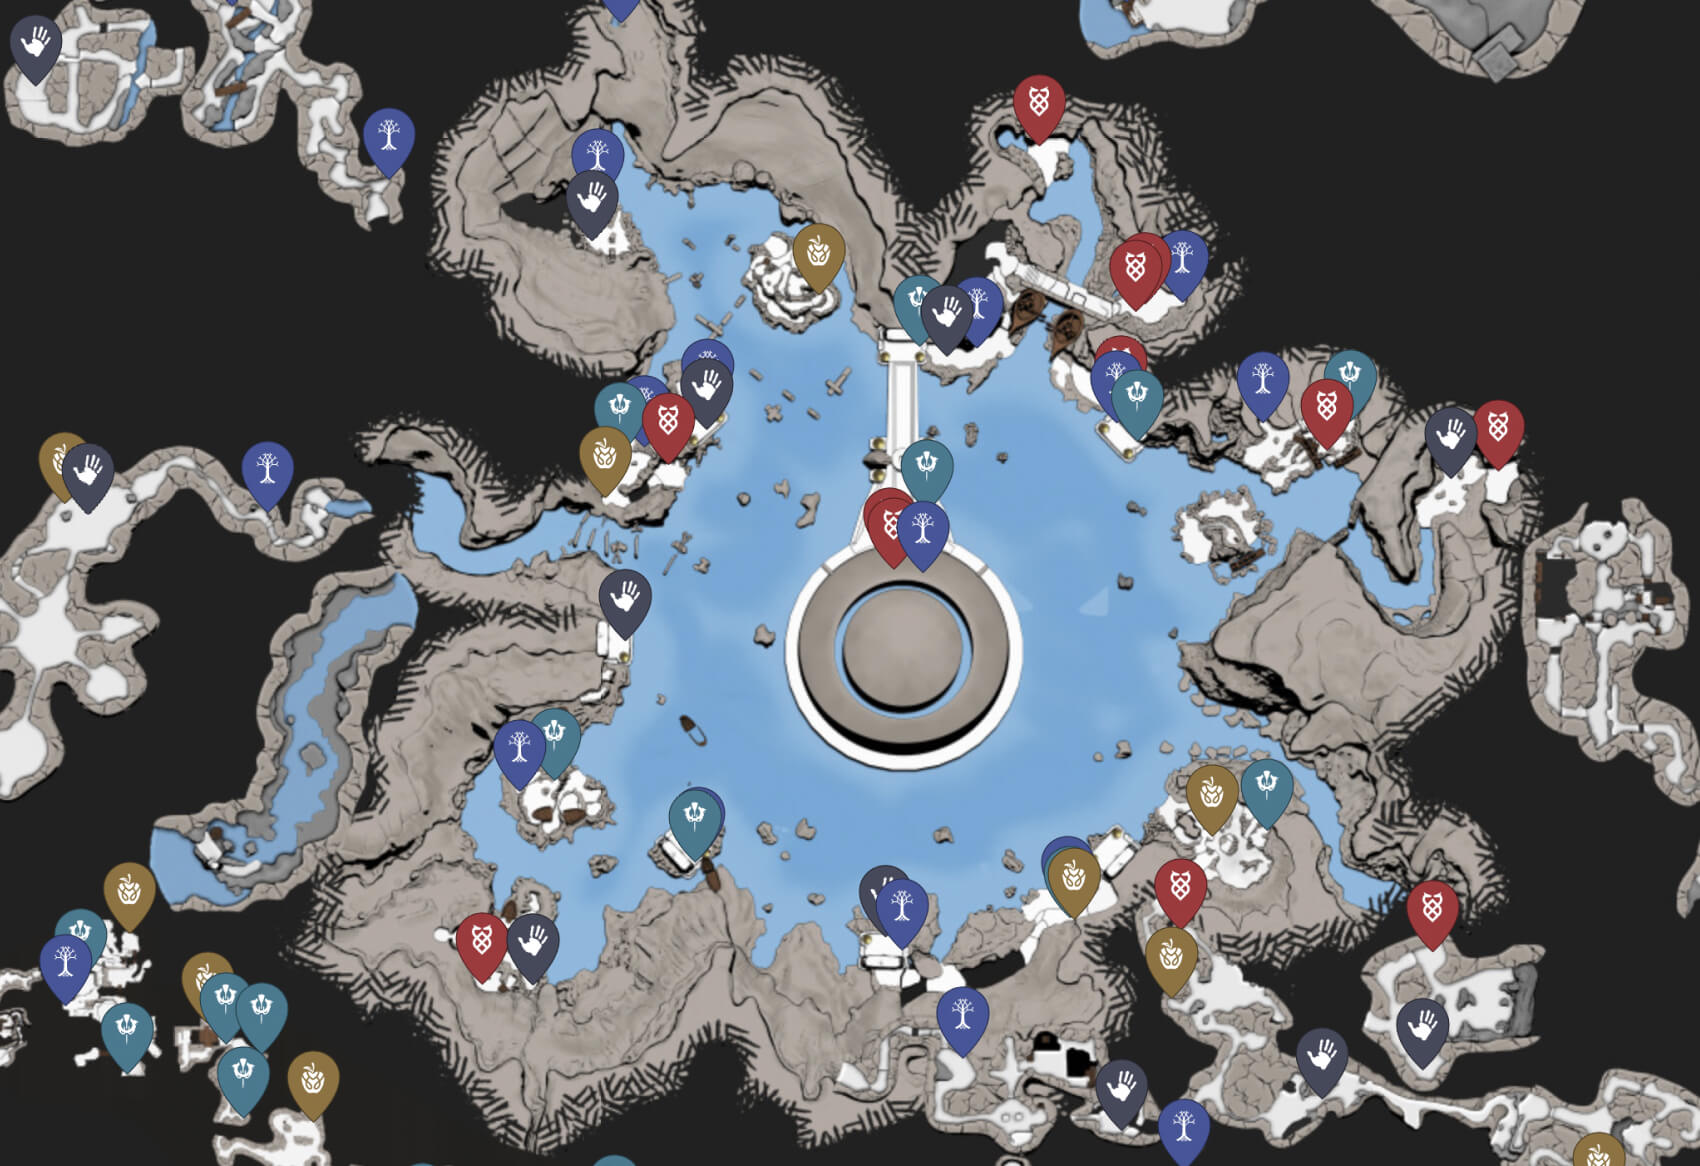 God of War (2018) Map Image